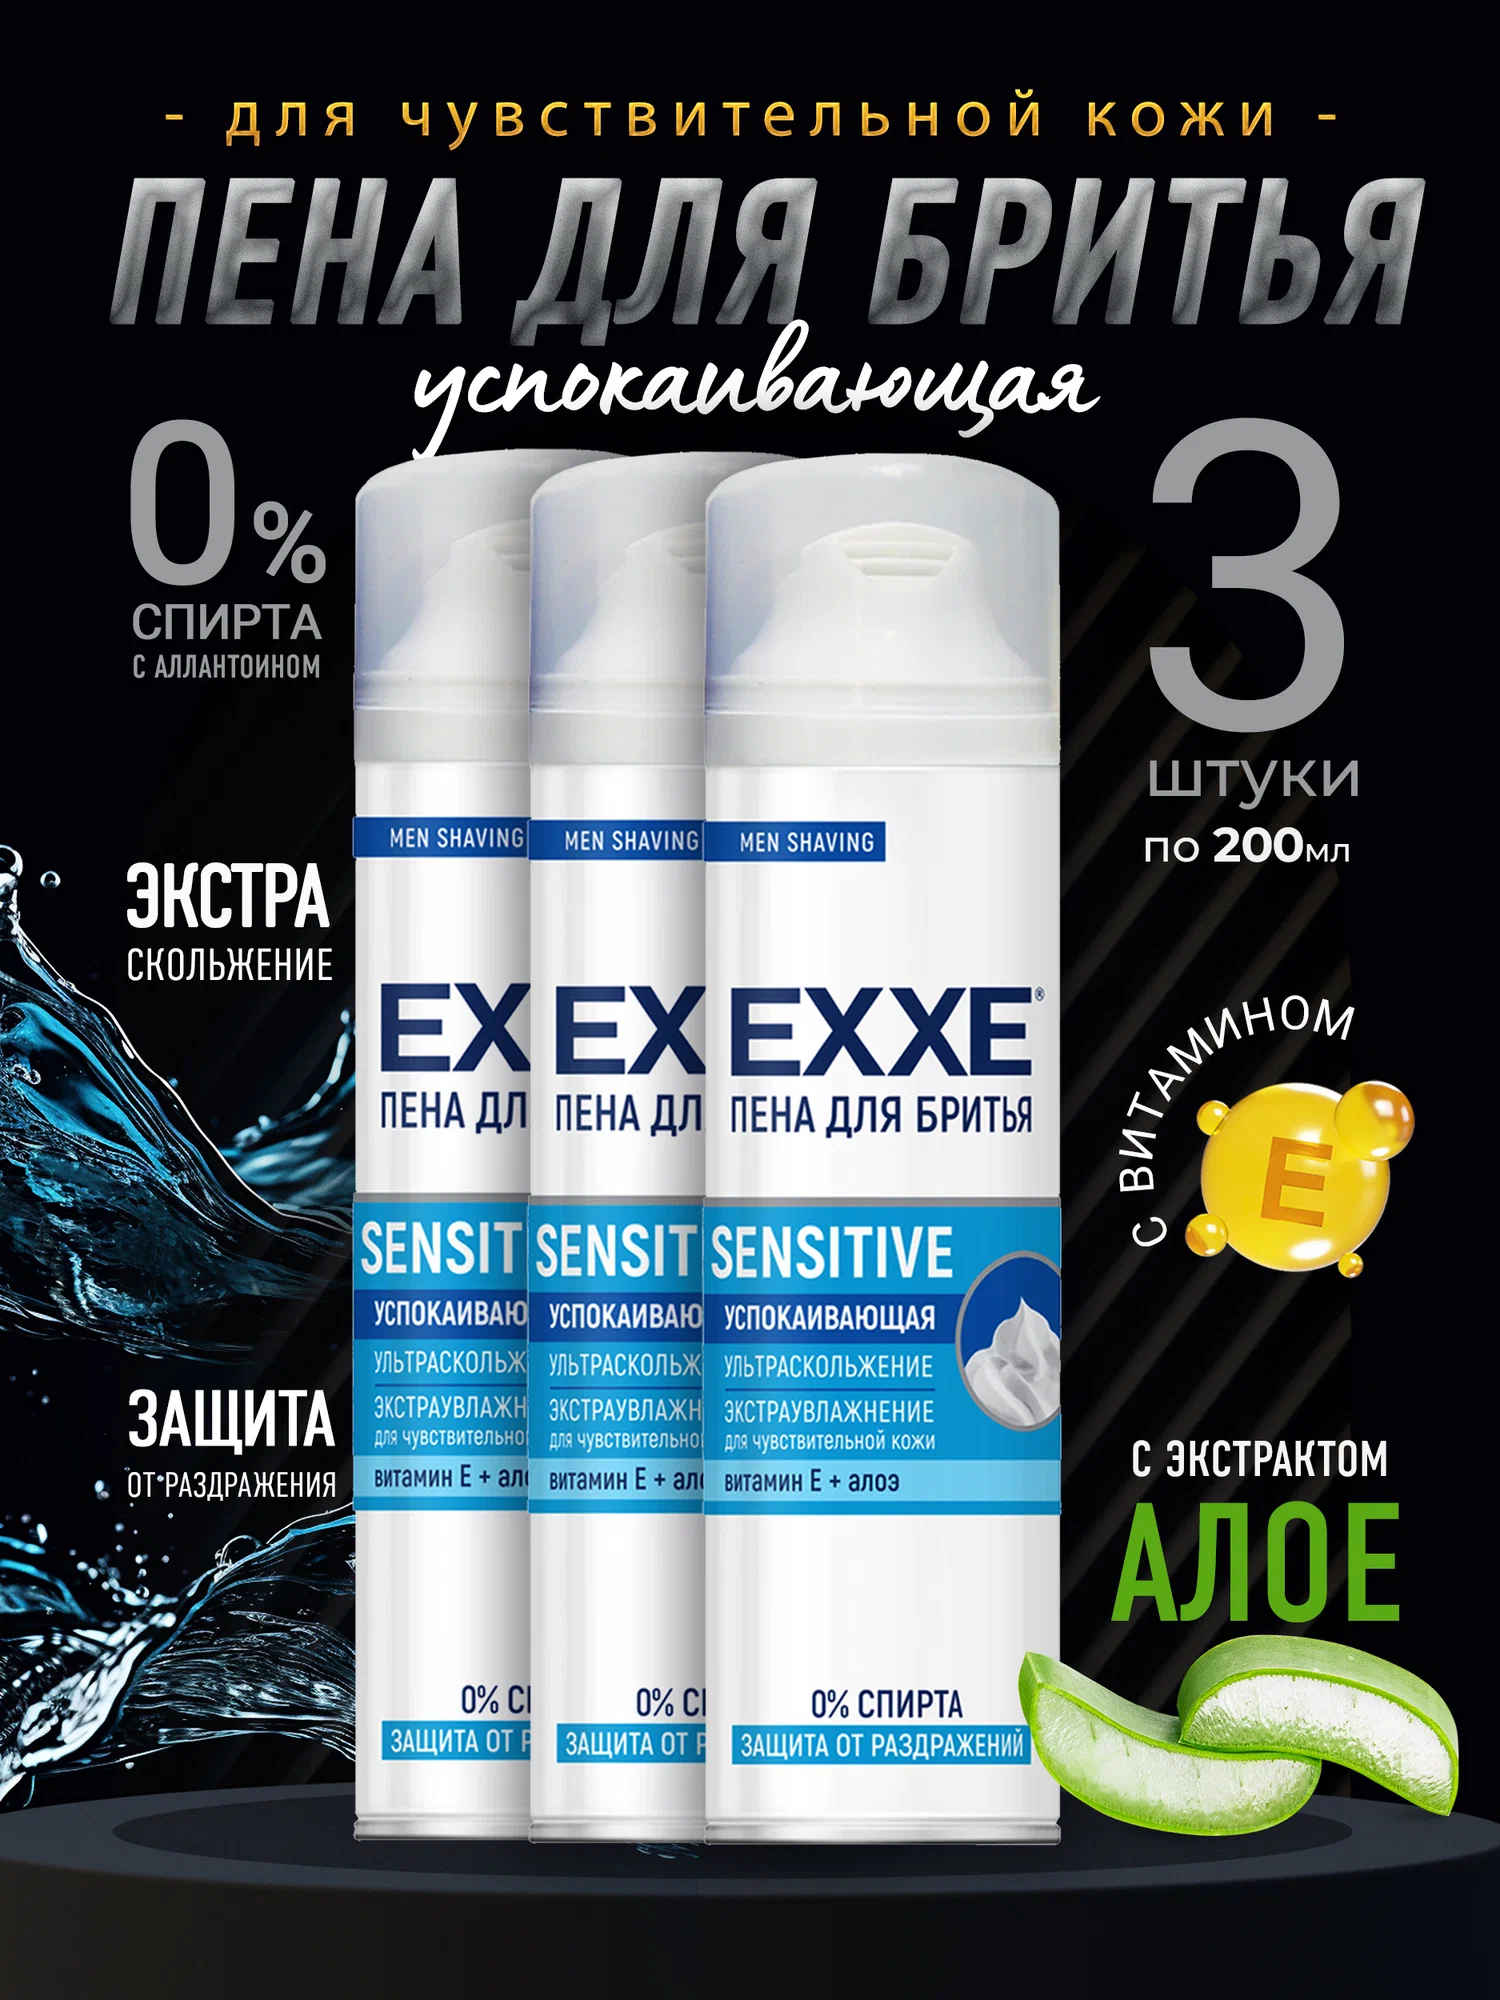 Пена для бритья EXXE Sensitive успокаивающая для чувствительной кожи, 3 шт х 200 мл